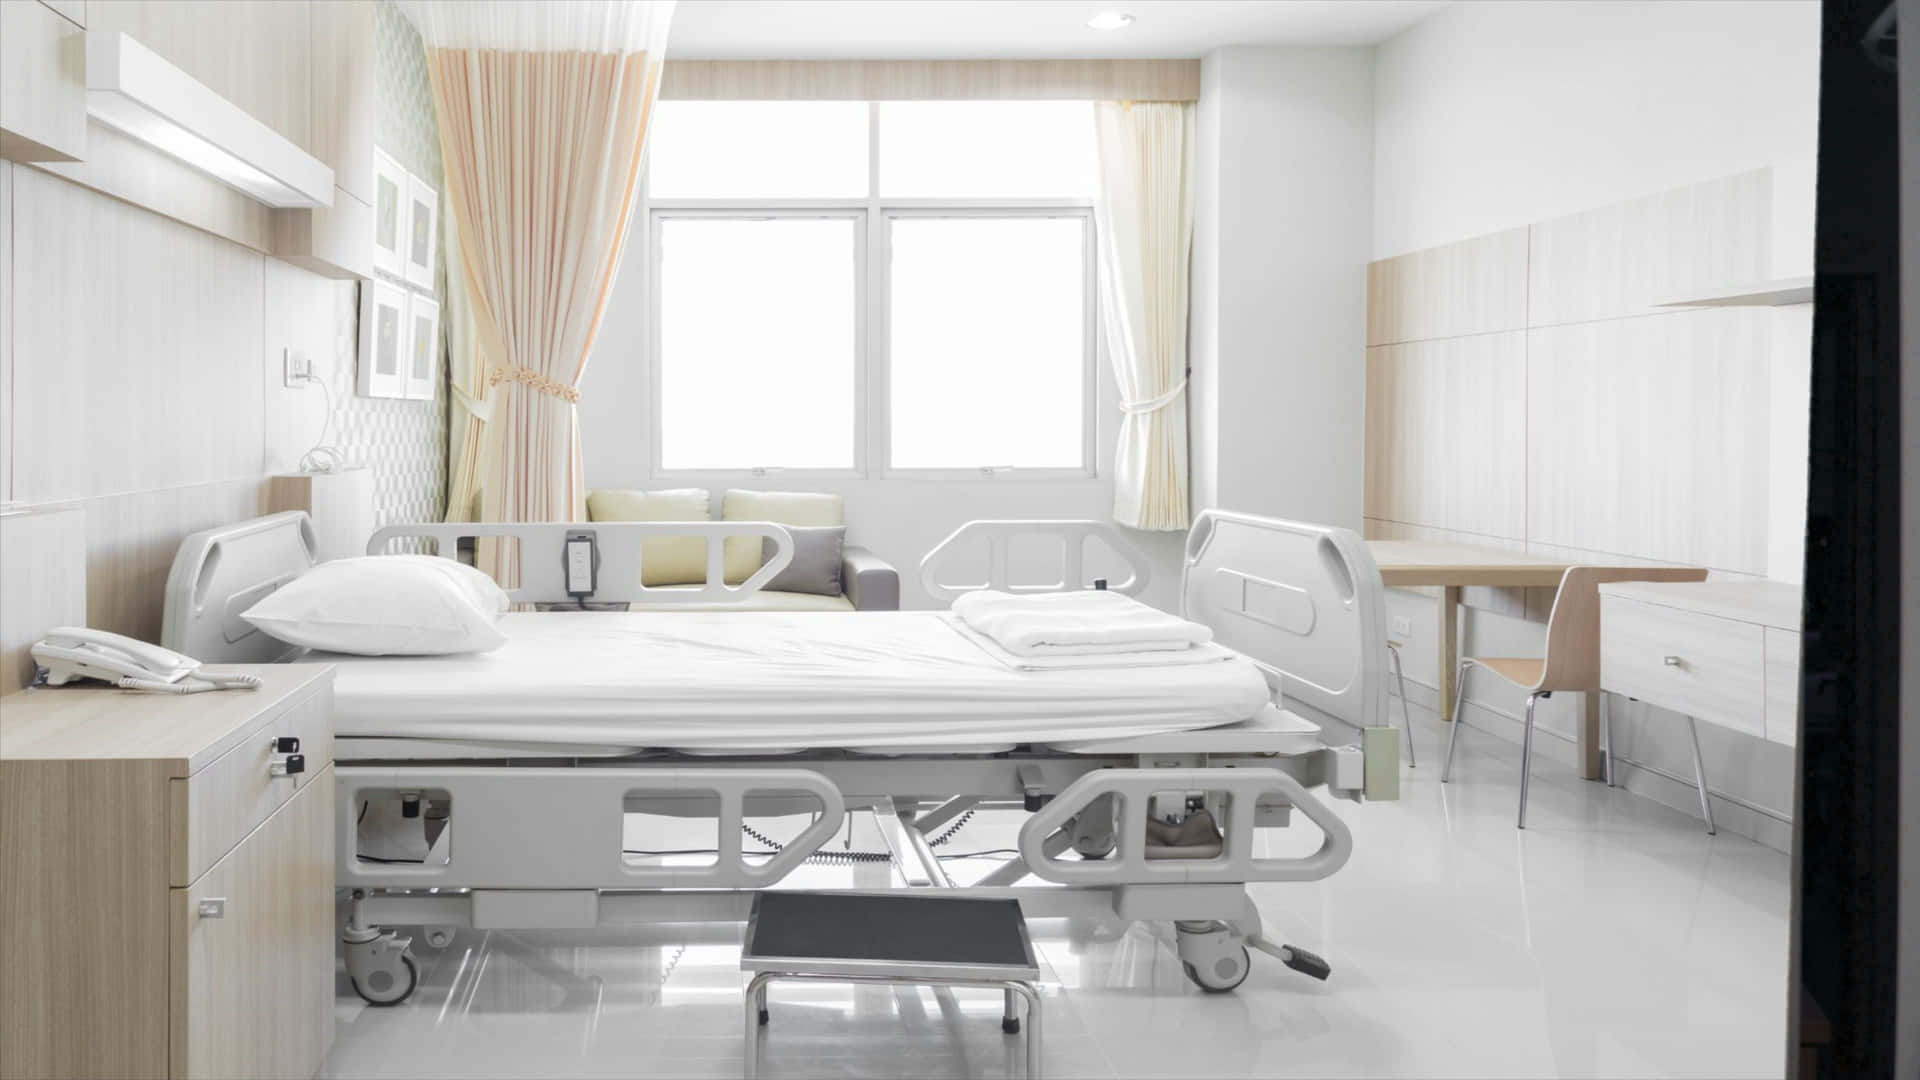 Ettsjukhusrum Med En Säng Och Ett Nattduksbord